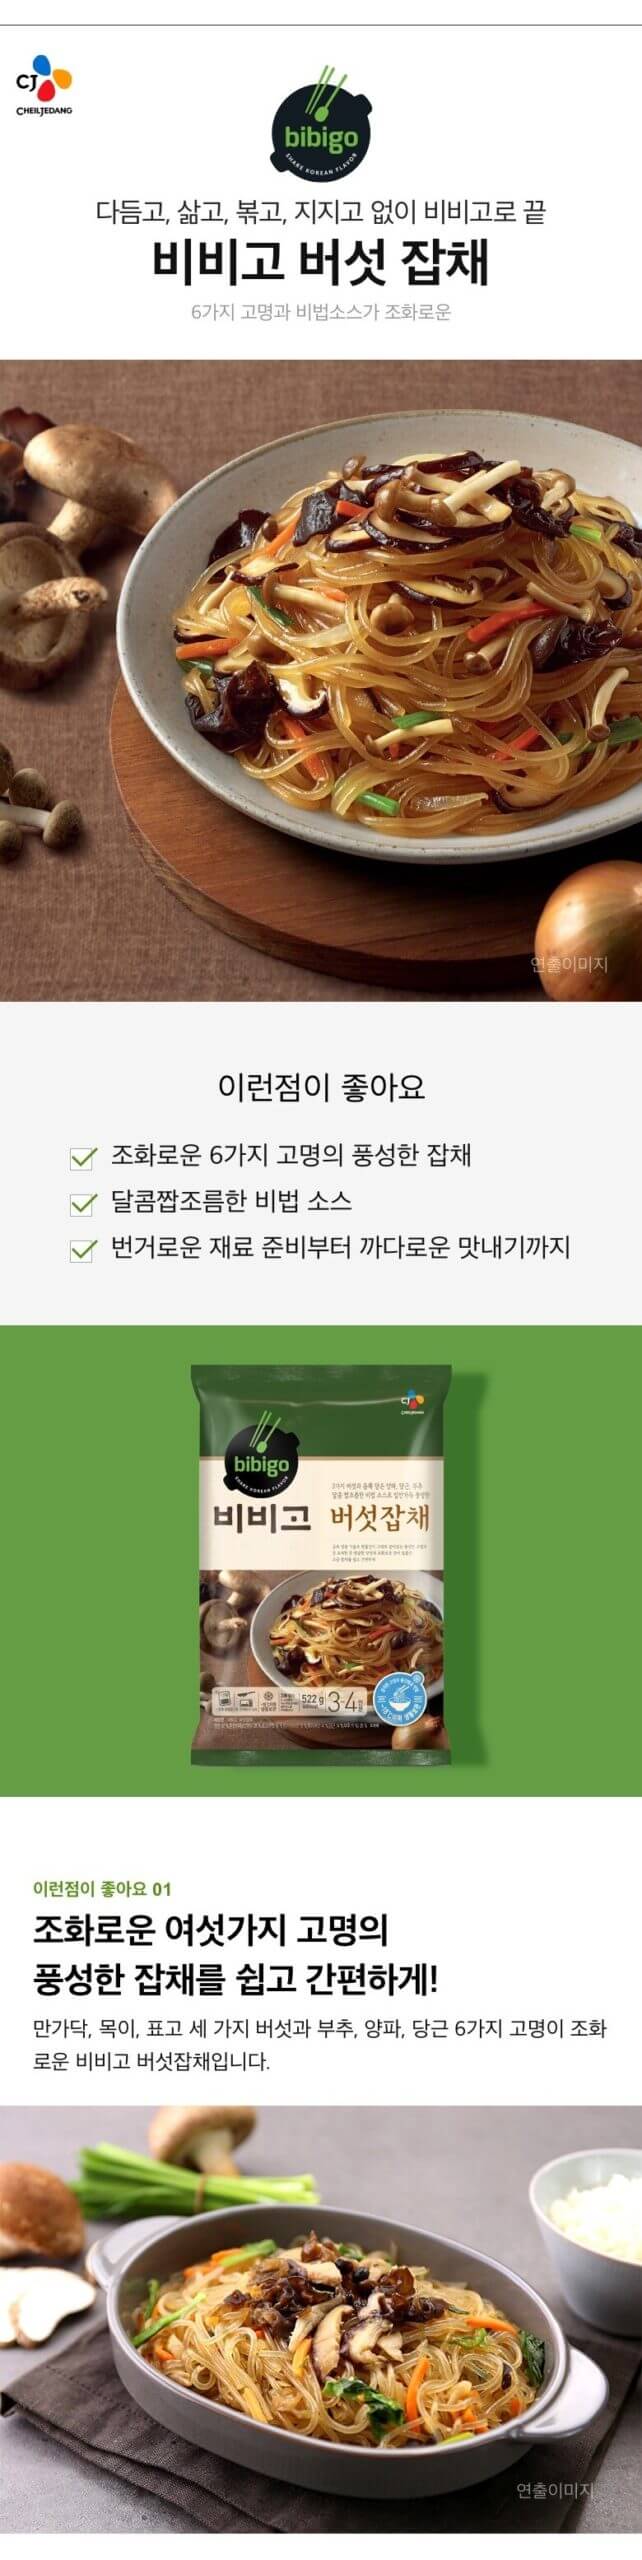 韓國食品-[CJ] 비비고 버섯잡채 522g